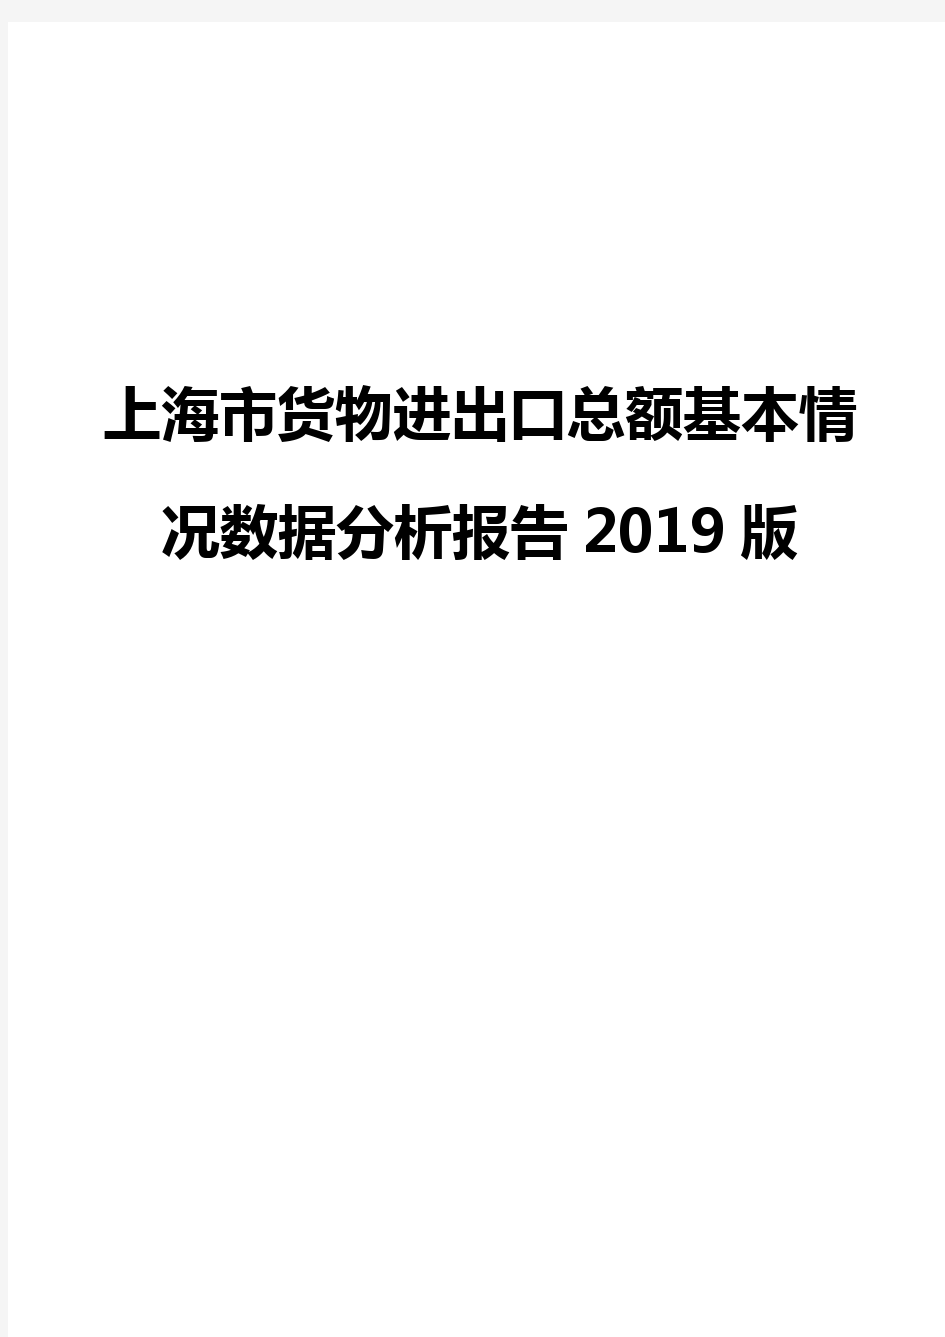 上海市货物进出口总额基本情况数据分析报告2019版